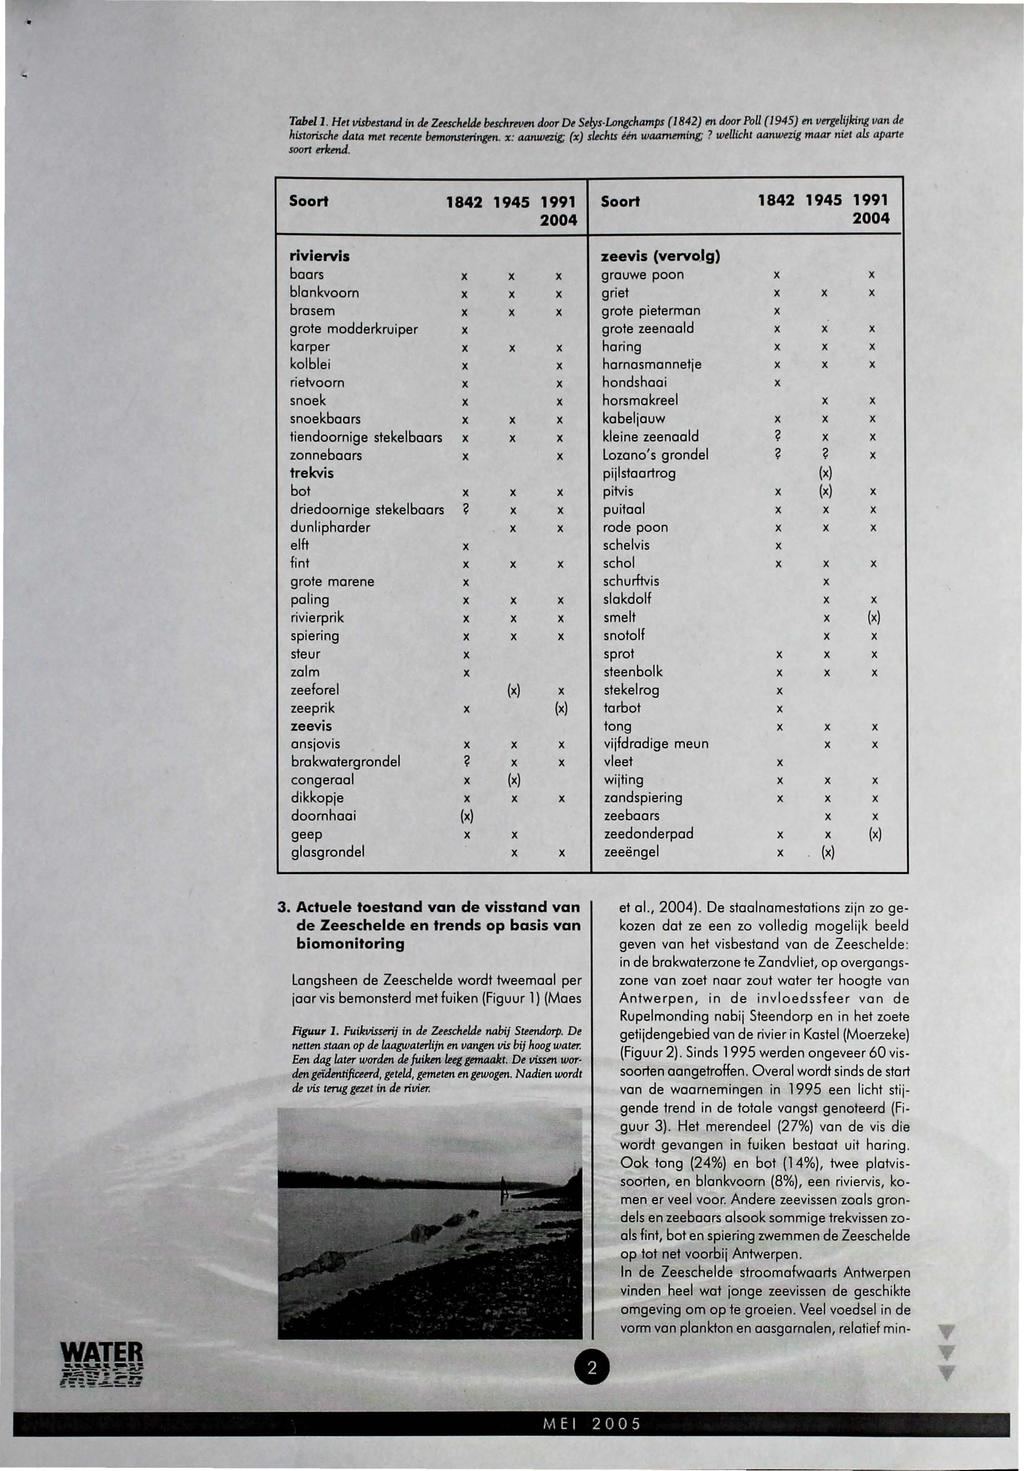 Tabel J. Het visbwand in de Zeescheldt beschreven door De Selys-Longchamps (1842) en door PoU (/945) en vergelijkir.g van de historische data mei reemie bemonstningm.